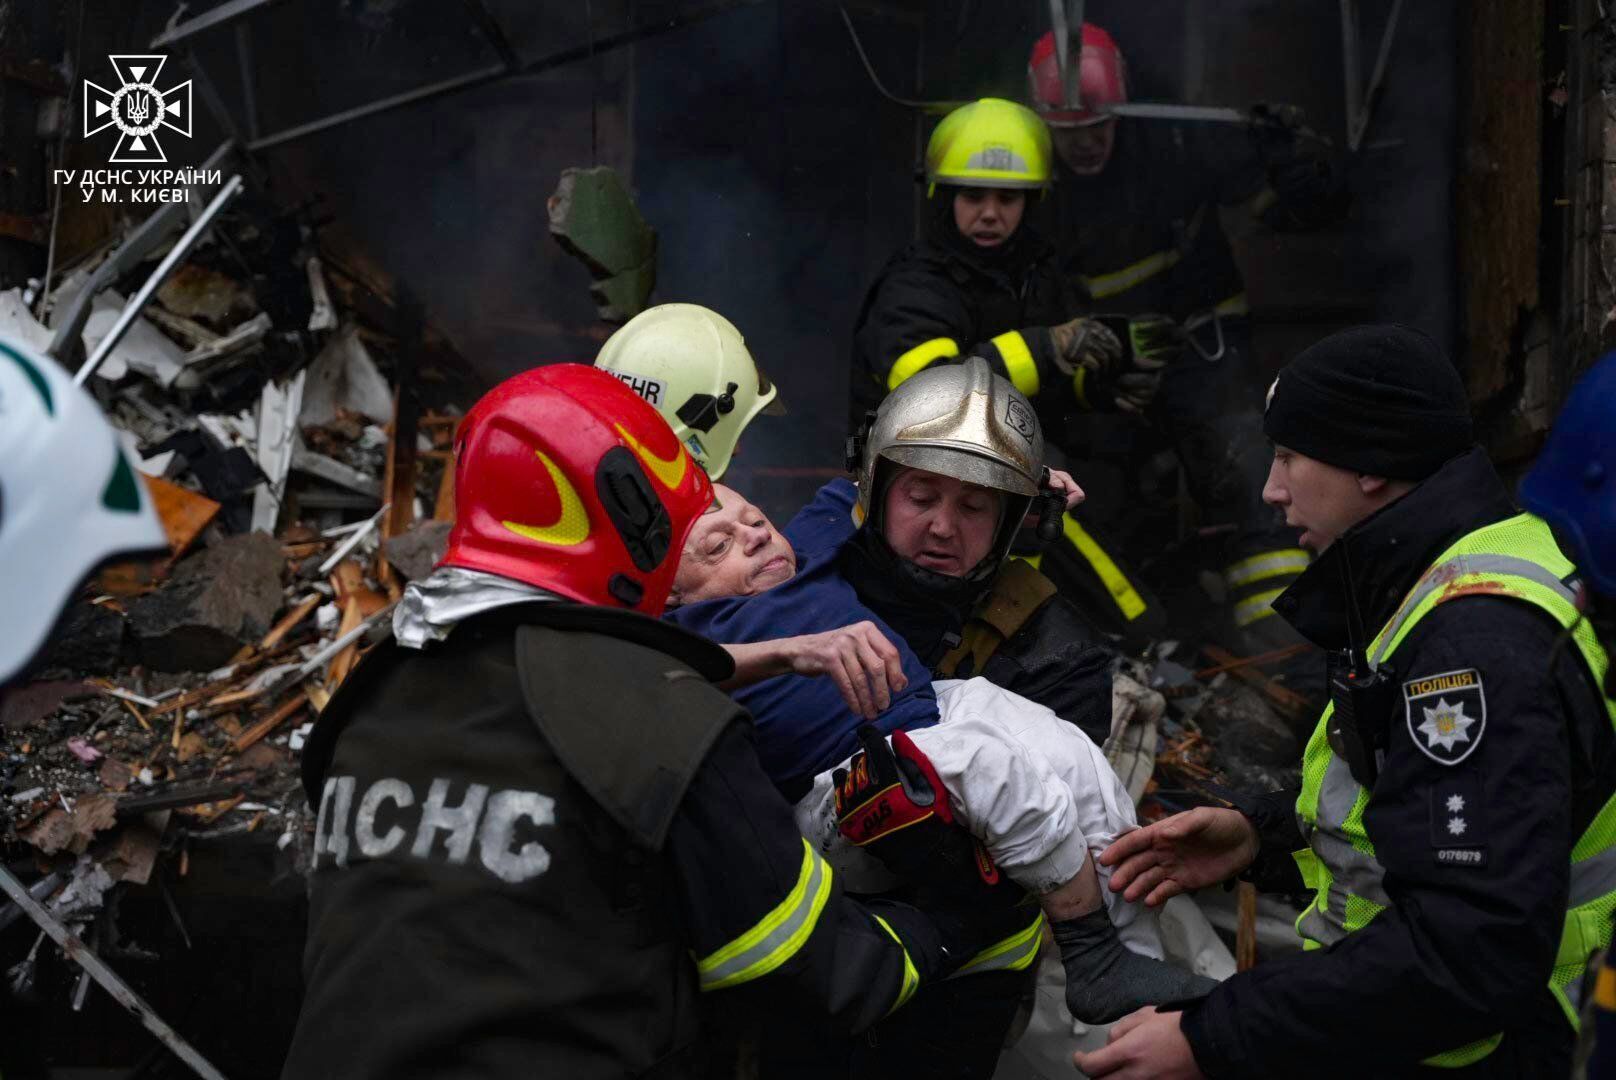 Врятувала мама з небес? "Кришталевий" чоловік, фото якого облетіло всю Україну, розповів про диво під час ракетного удару Росії по Києву